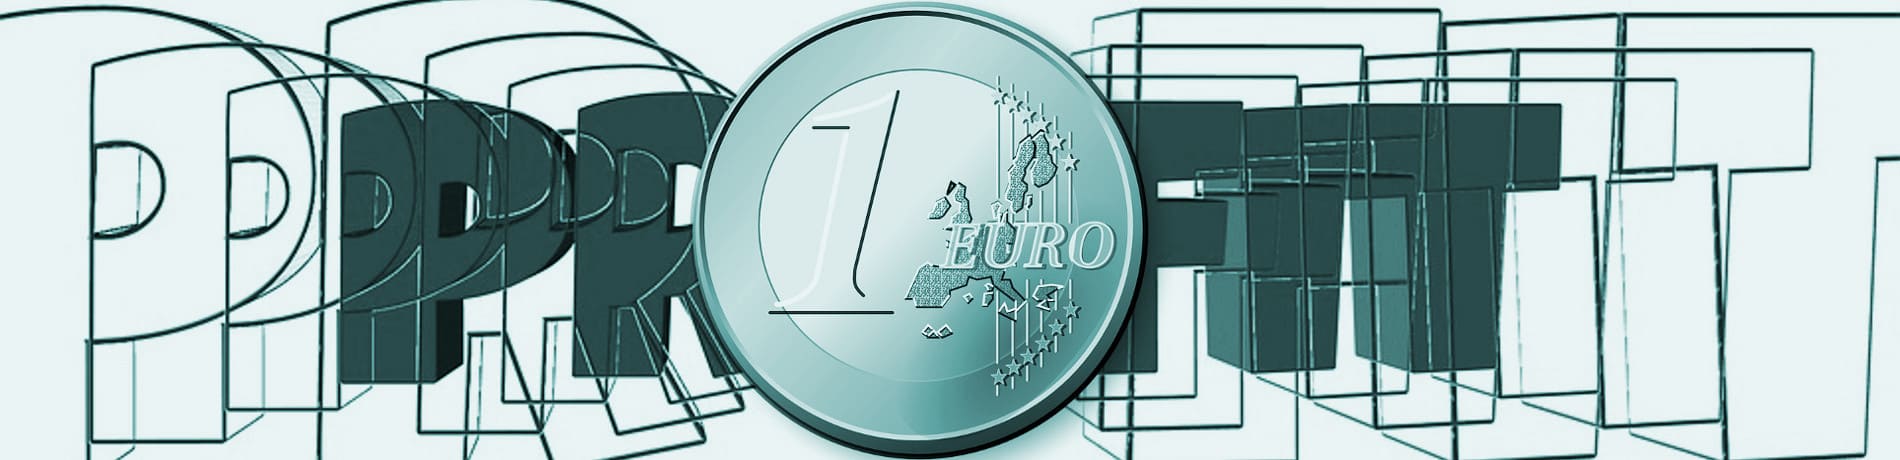 Preise in Euro für Landingpage